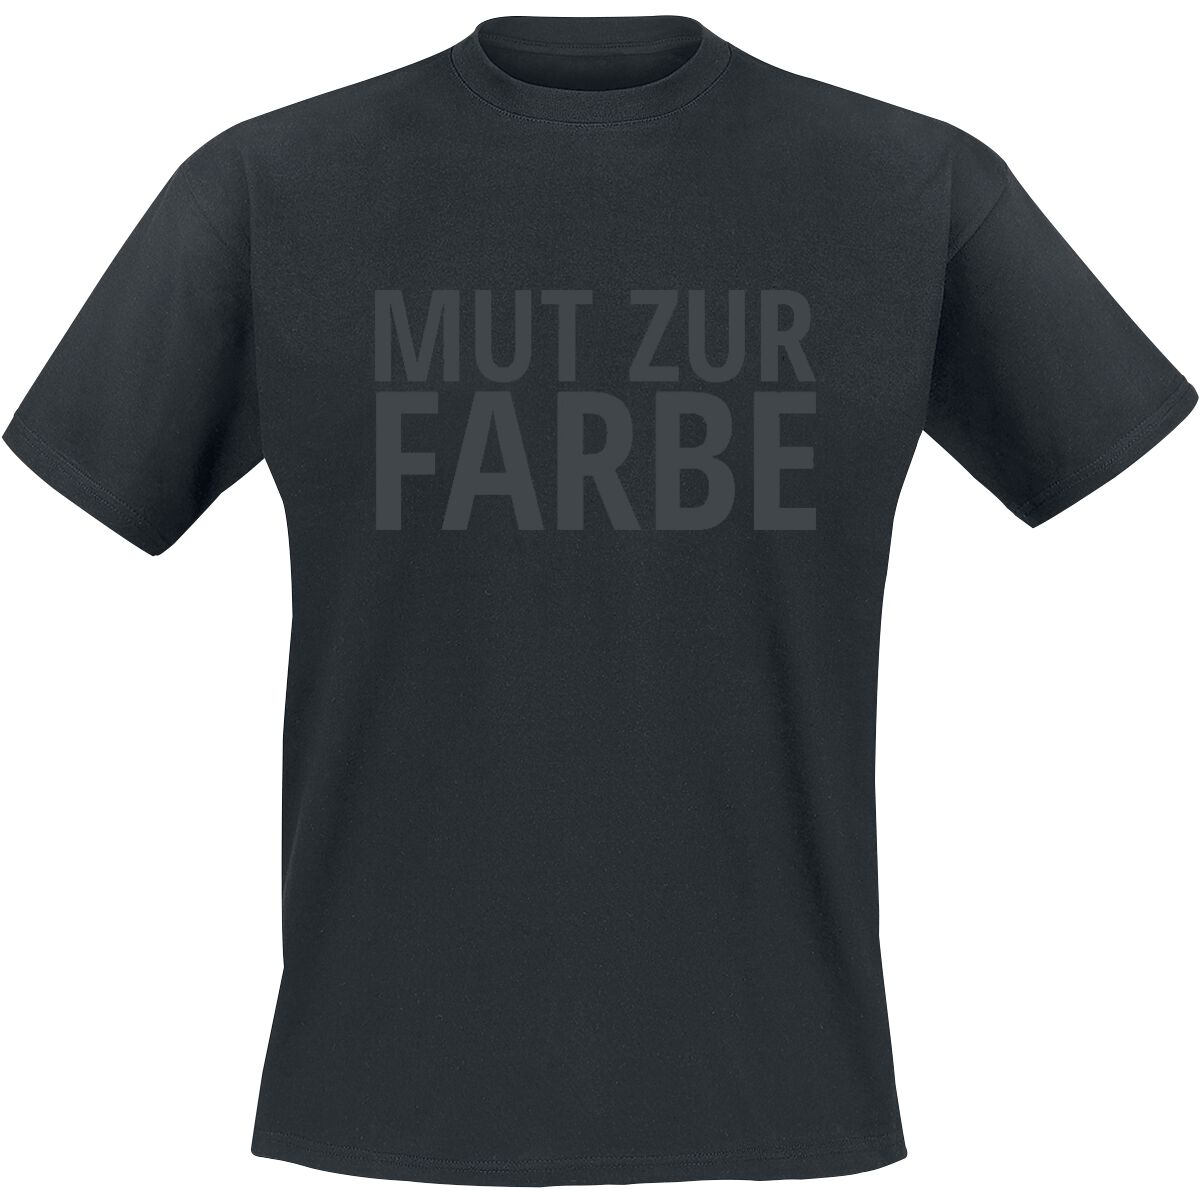 Sprüche T-Shirt - Mut zur Farbe - S bis 5XL - für Männer - Größe 4XL - schwarz